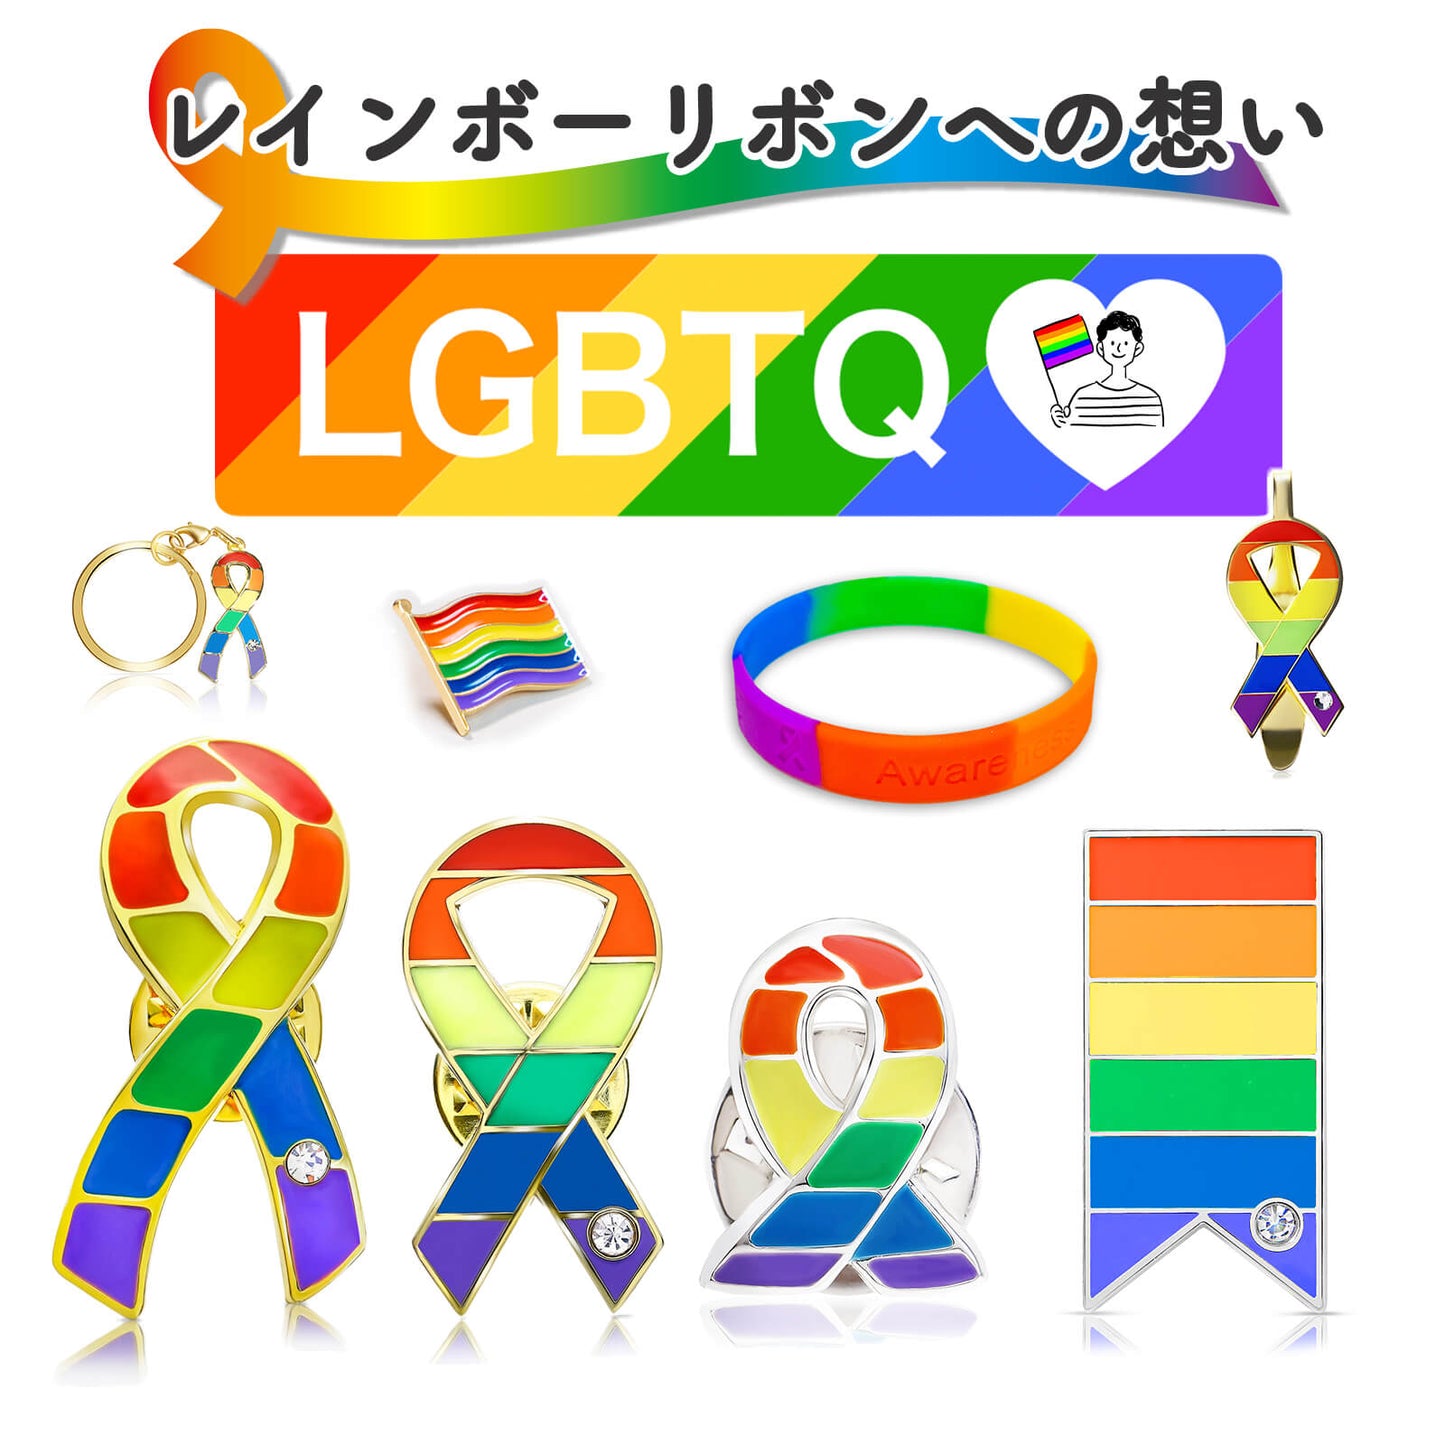 レインボー リボン ブレスレット LGBT SDGs ゲイ レズ プライド 性的少数者 アウェアネス ラバーバンド シリコン